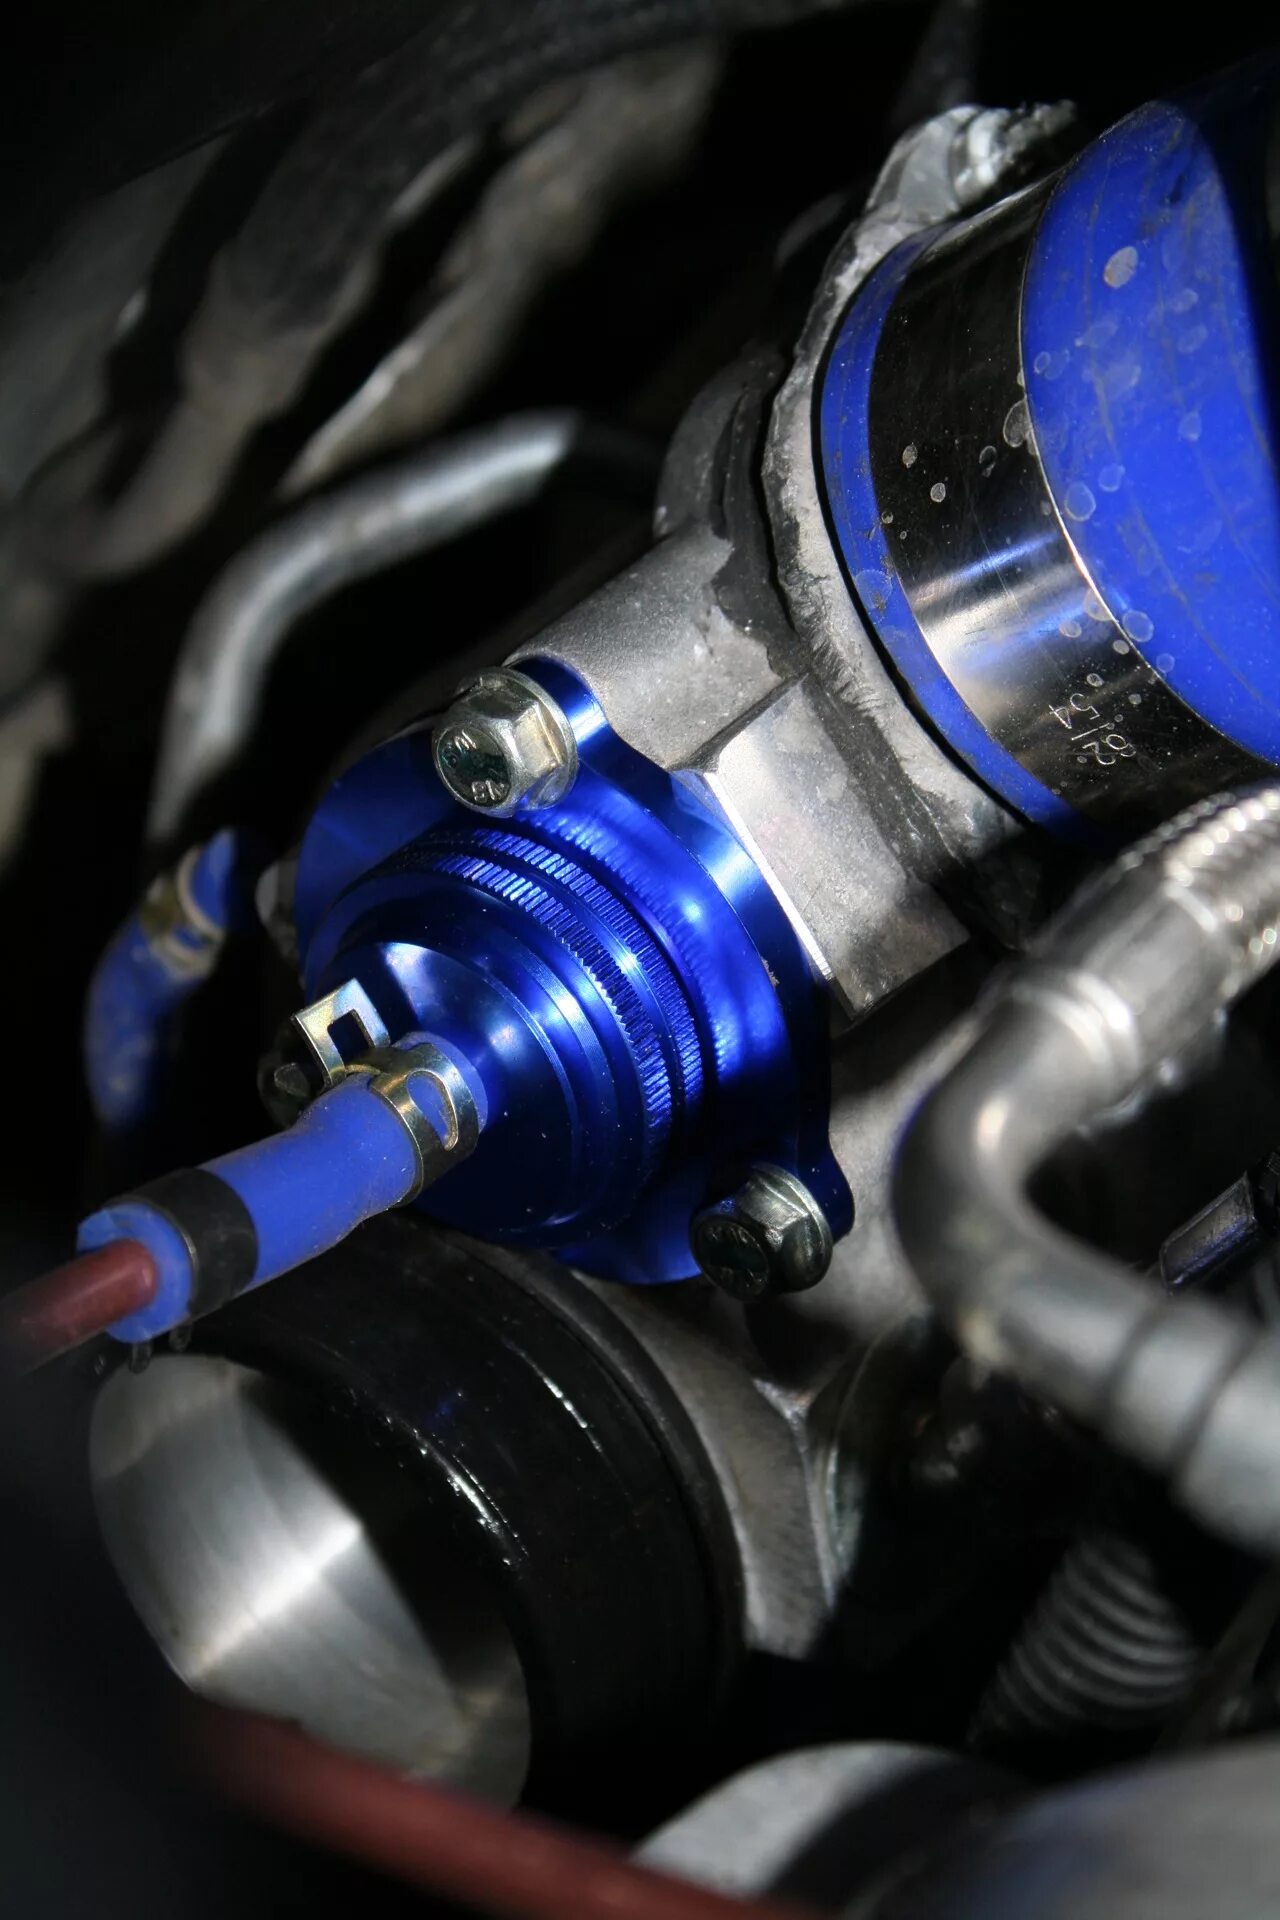 Клапан байпас Opel  1.4 турбо. Байпасный клапан на Opel Astra j 1.6 Turbo. Байпасный клапан Опель 1.6 турбо.